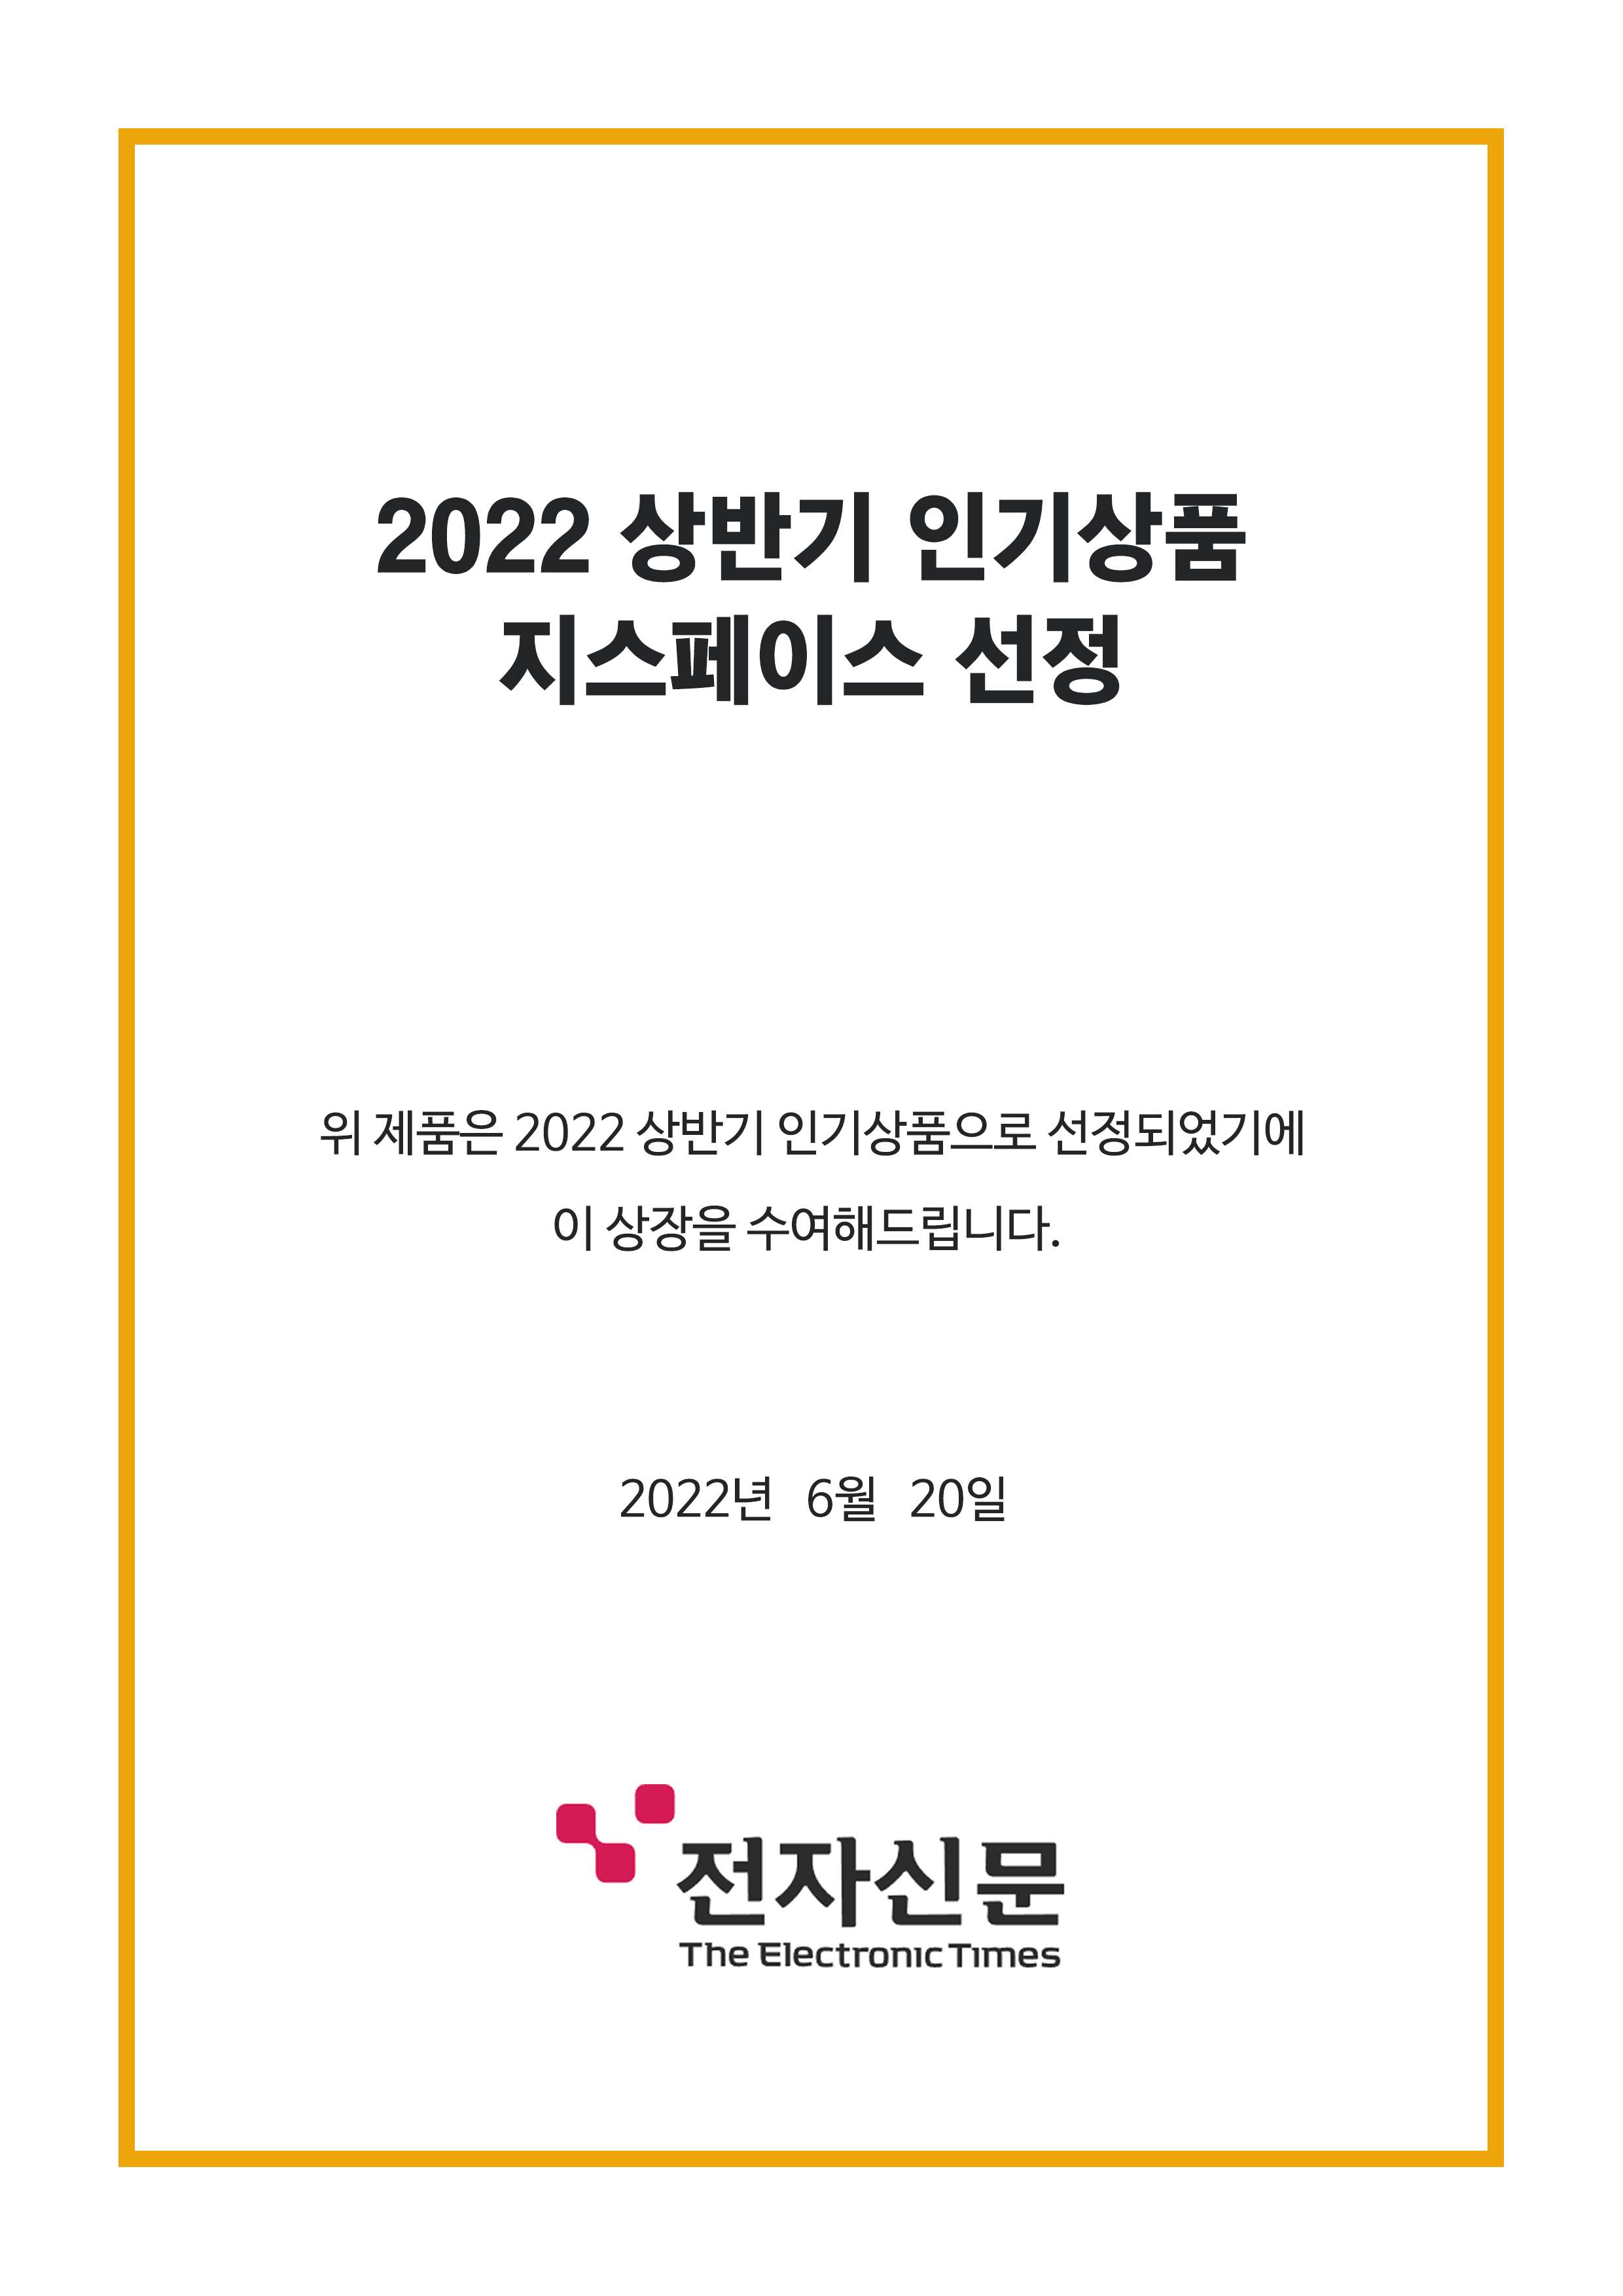 전자신문 ‘2022 상반기 인기상품’ 지스페이스 선정